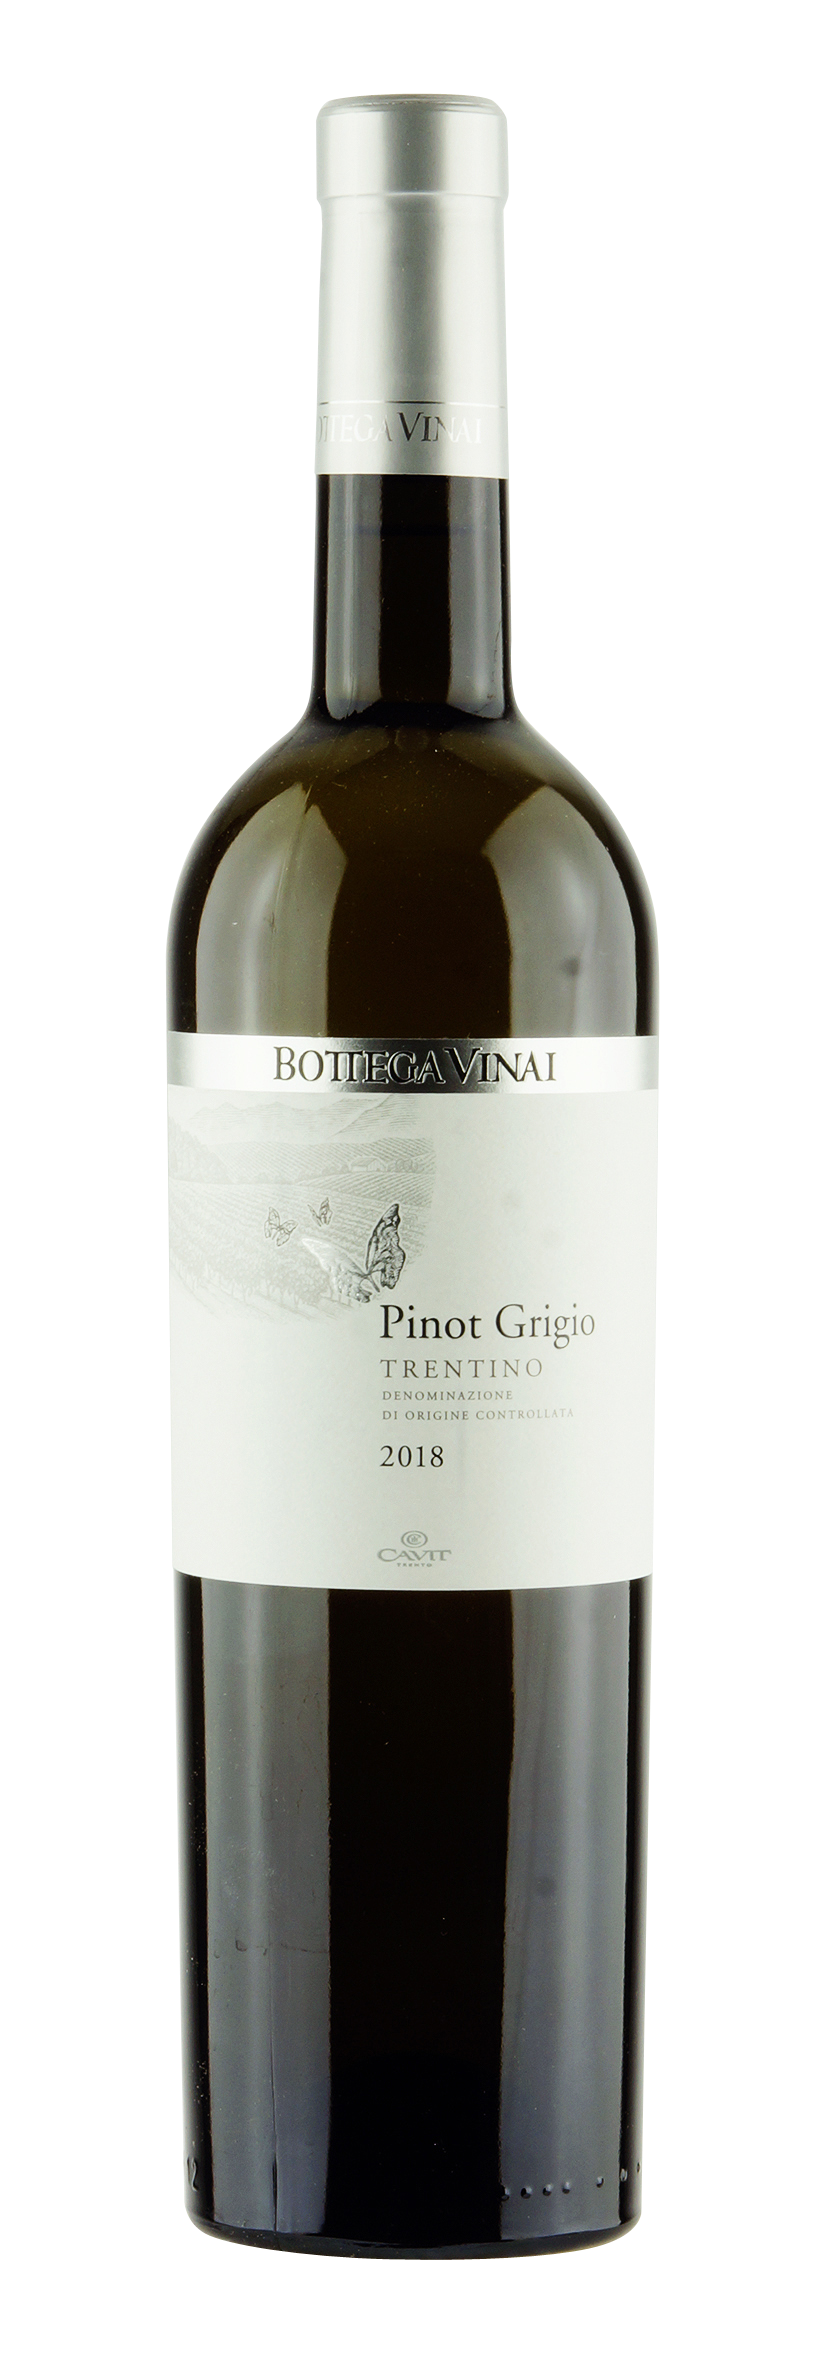 Trentino DOC Pinot Grigio Bottega Vinai 2018